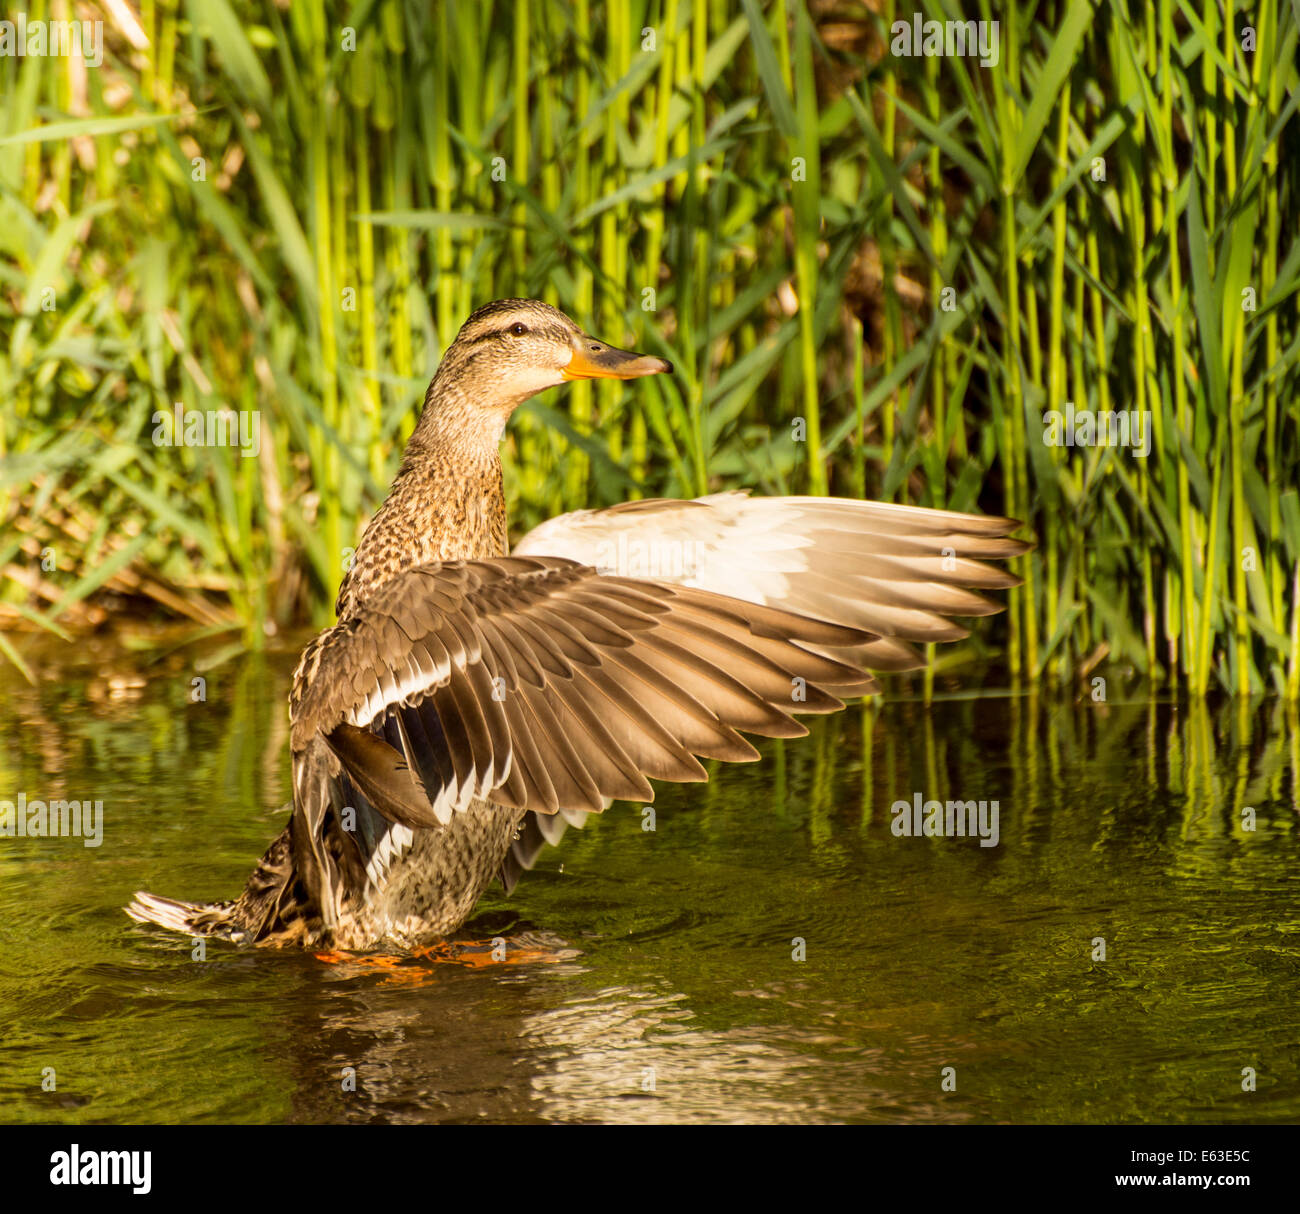 La faune, les oiseaux d'eau, Close-up of female Mallard duck battre ses ailes en Arkansas River. Boise, Idaho, USA Banque D'Images